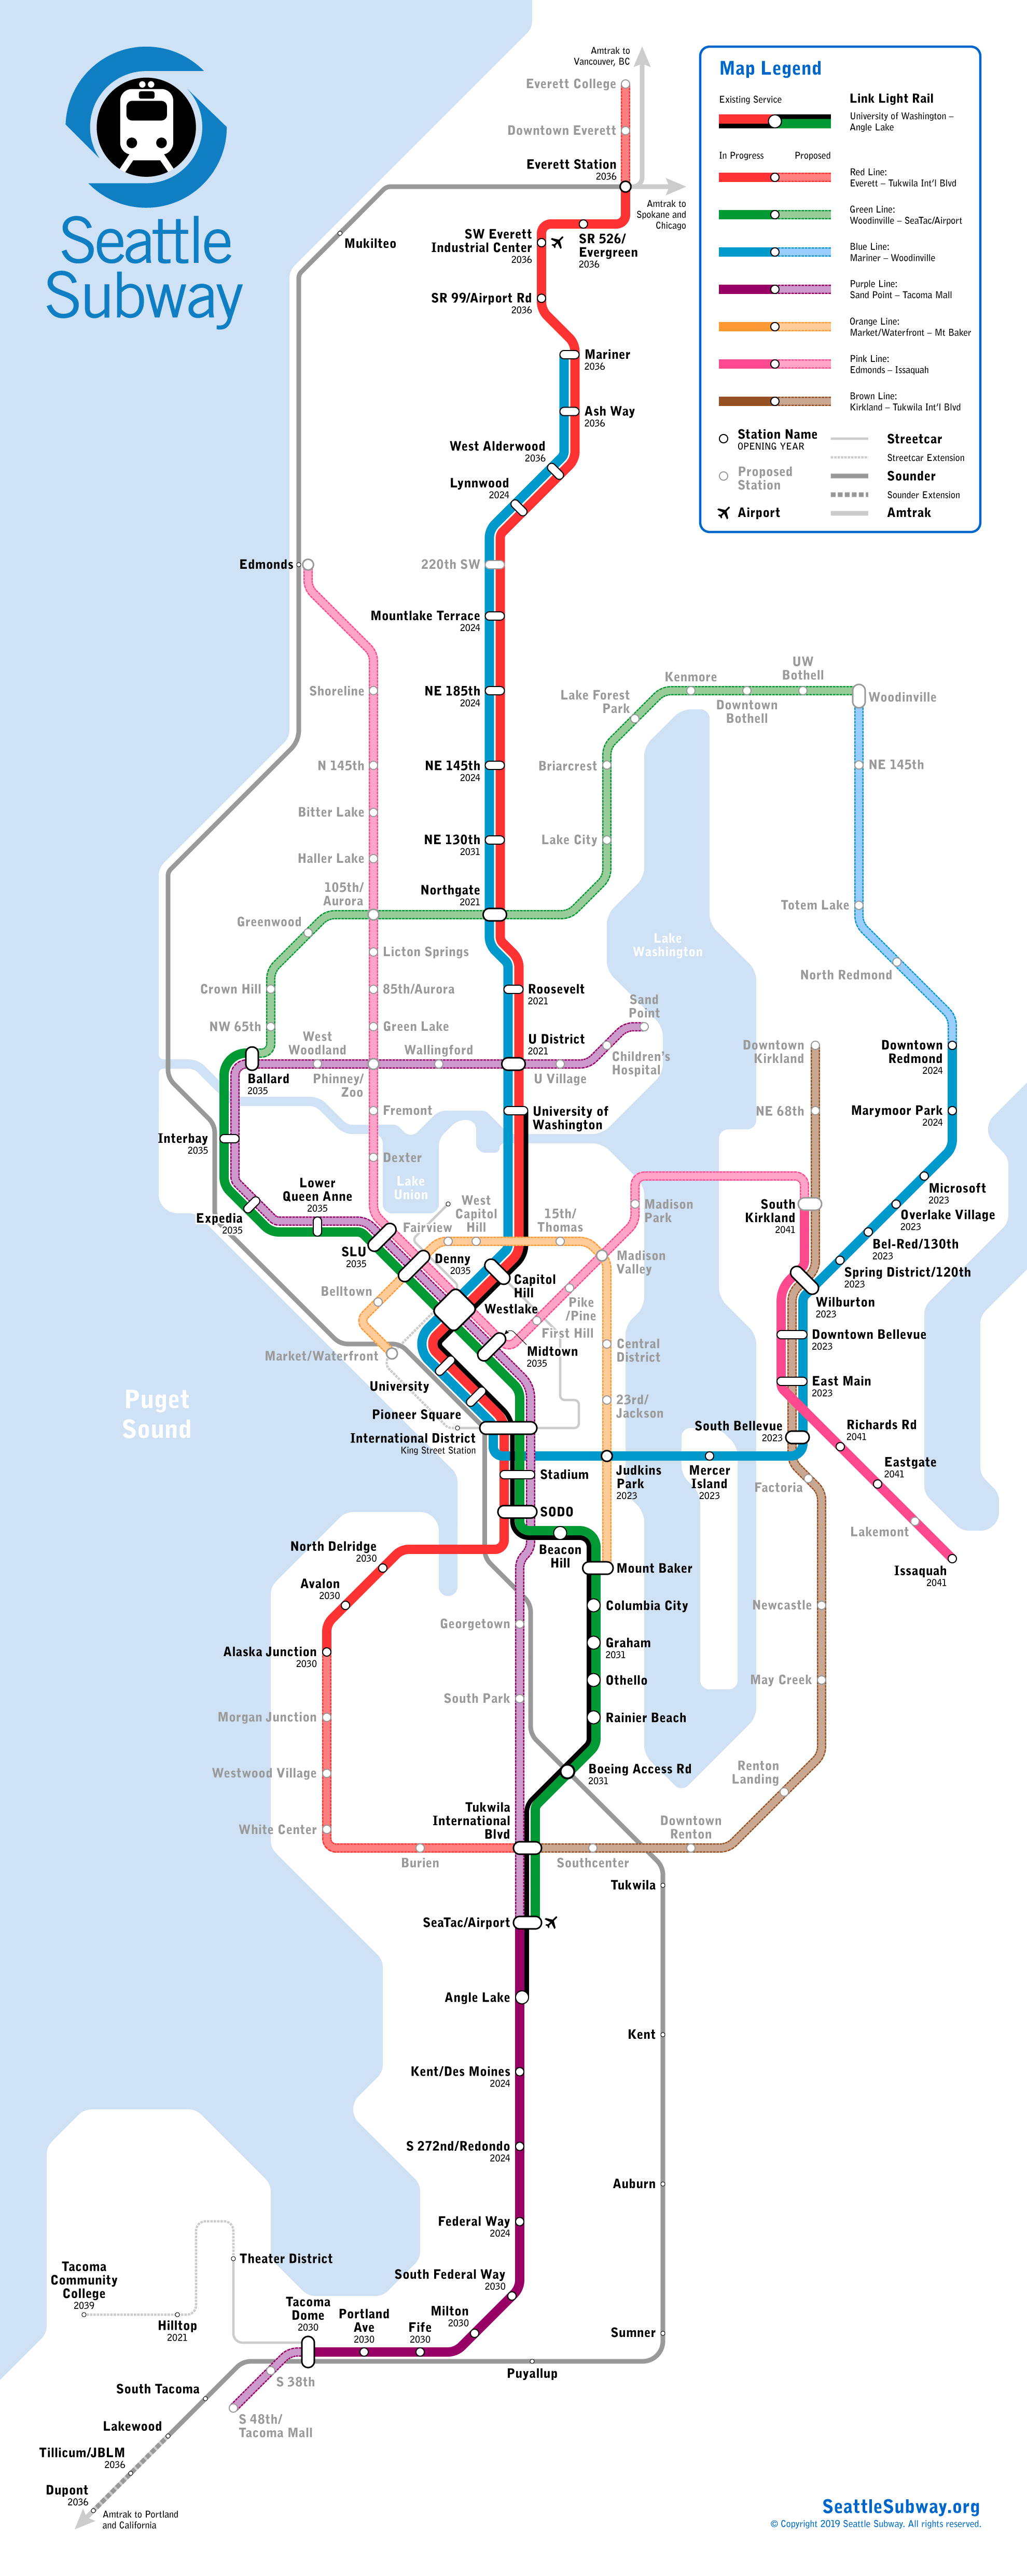 1988 Metro Transit Map Details, Seattle, Detailed maps incl…